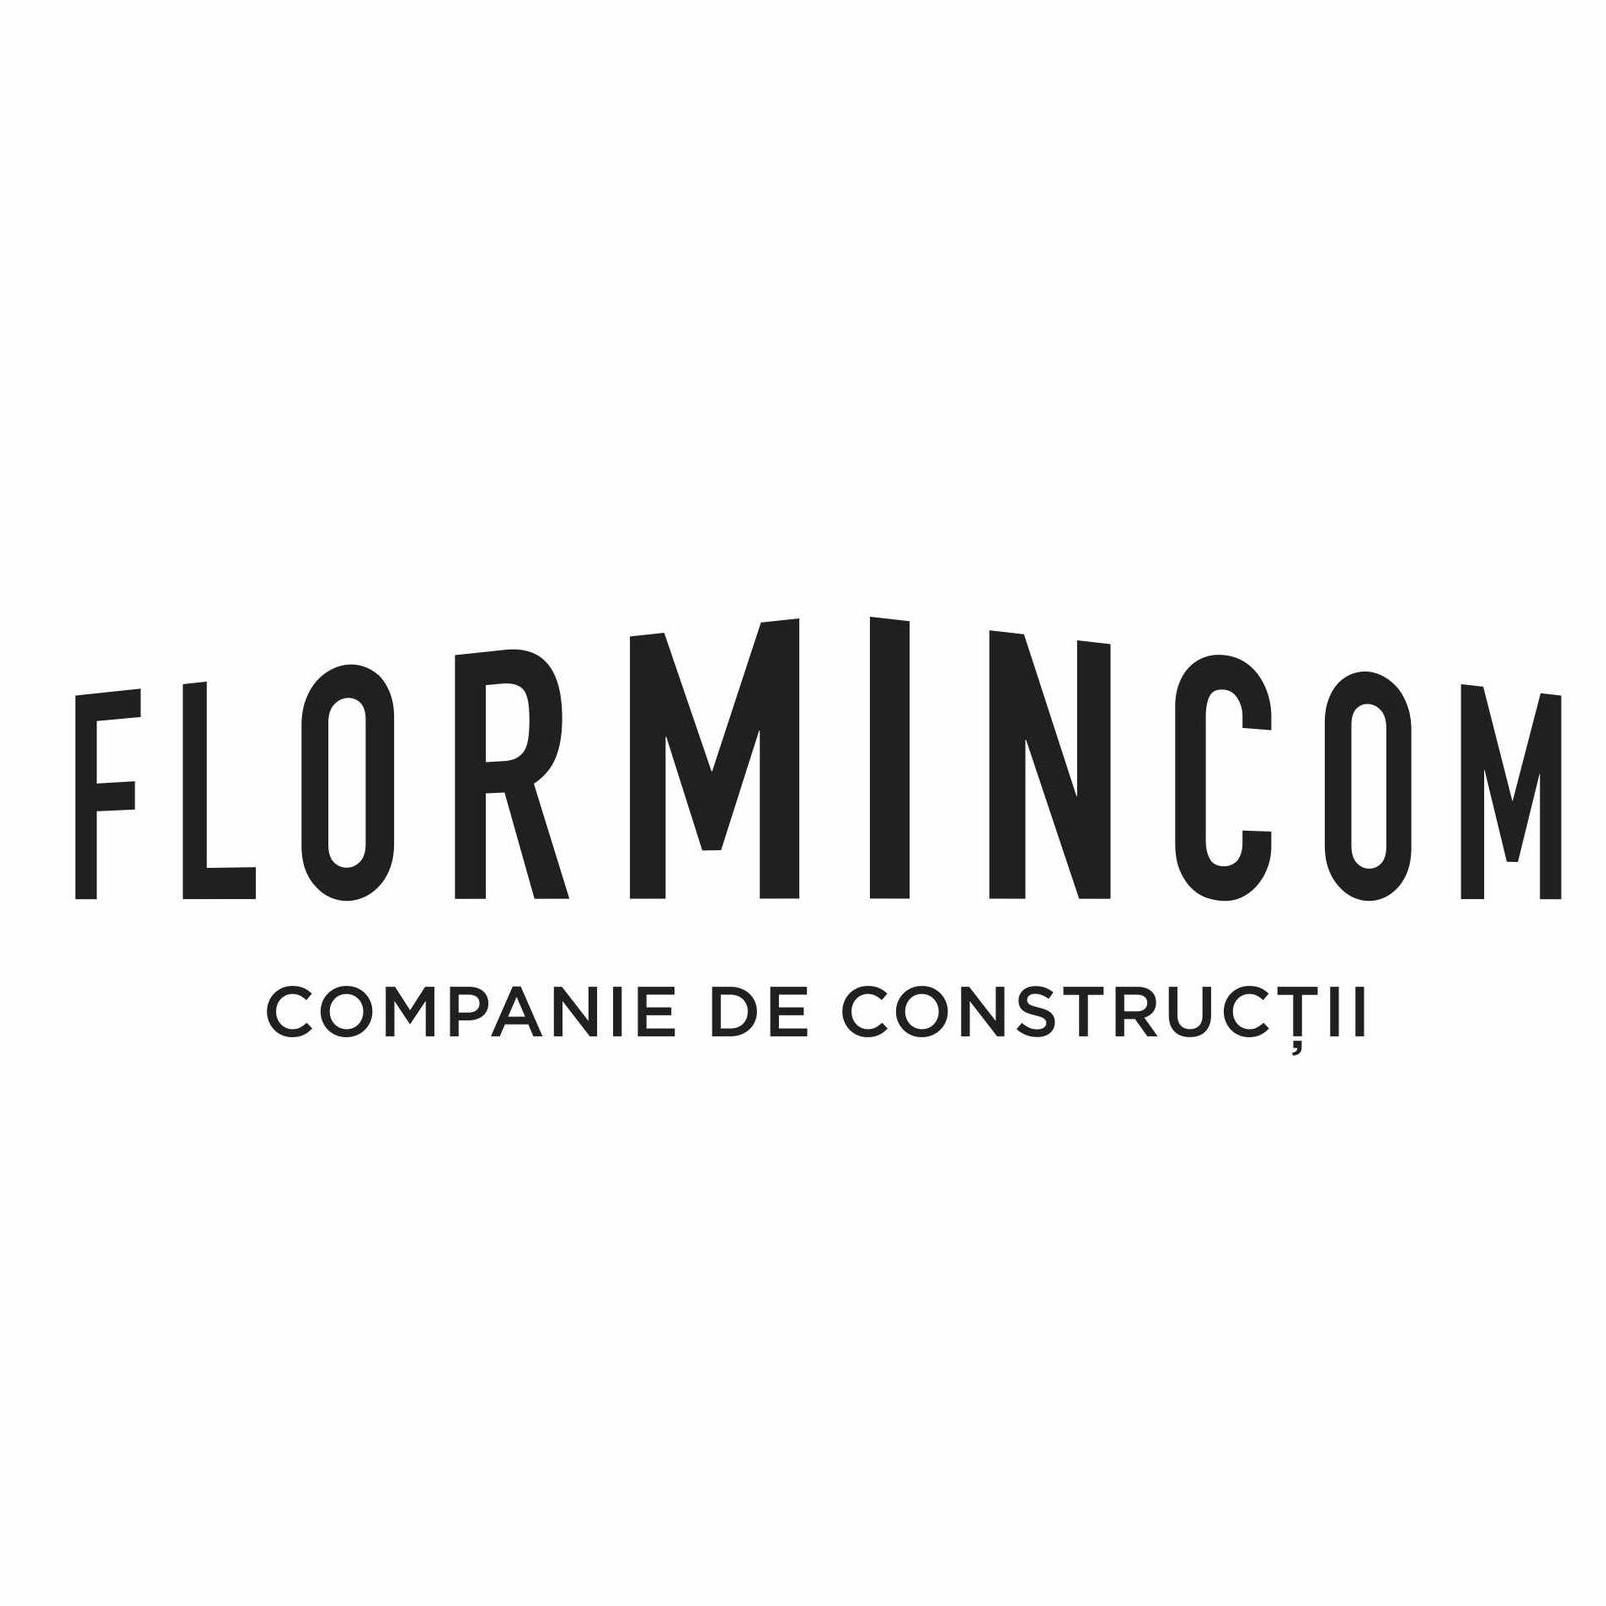 Flormincom